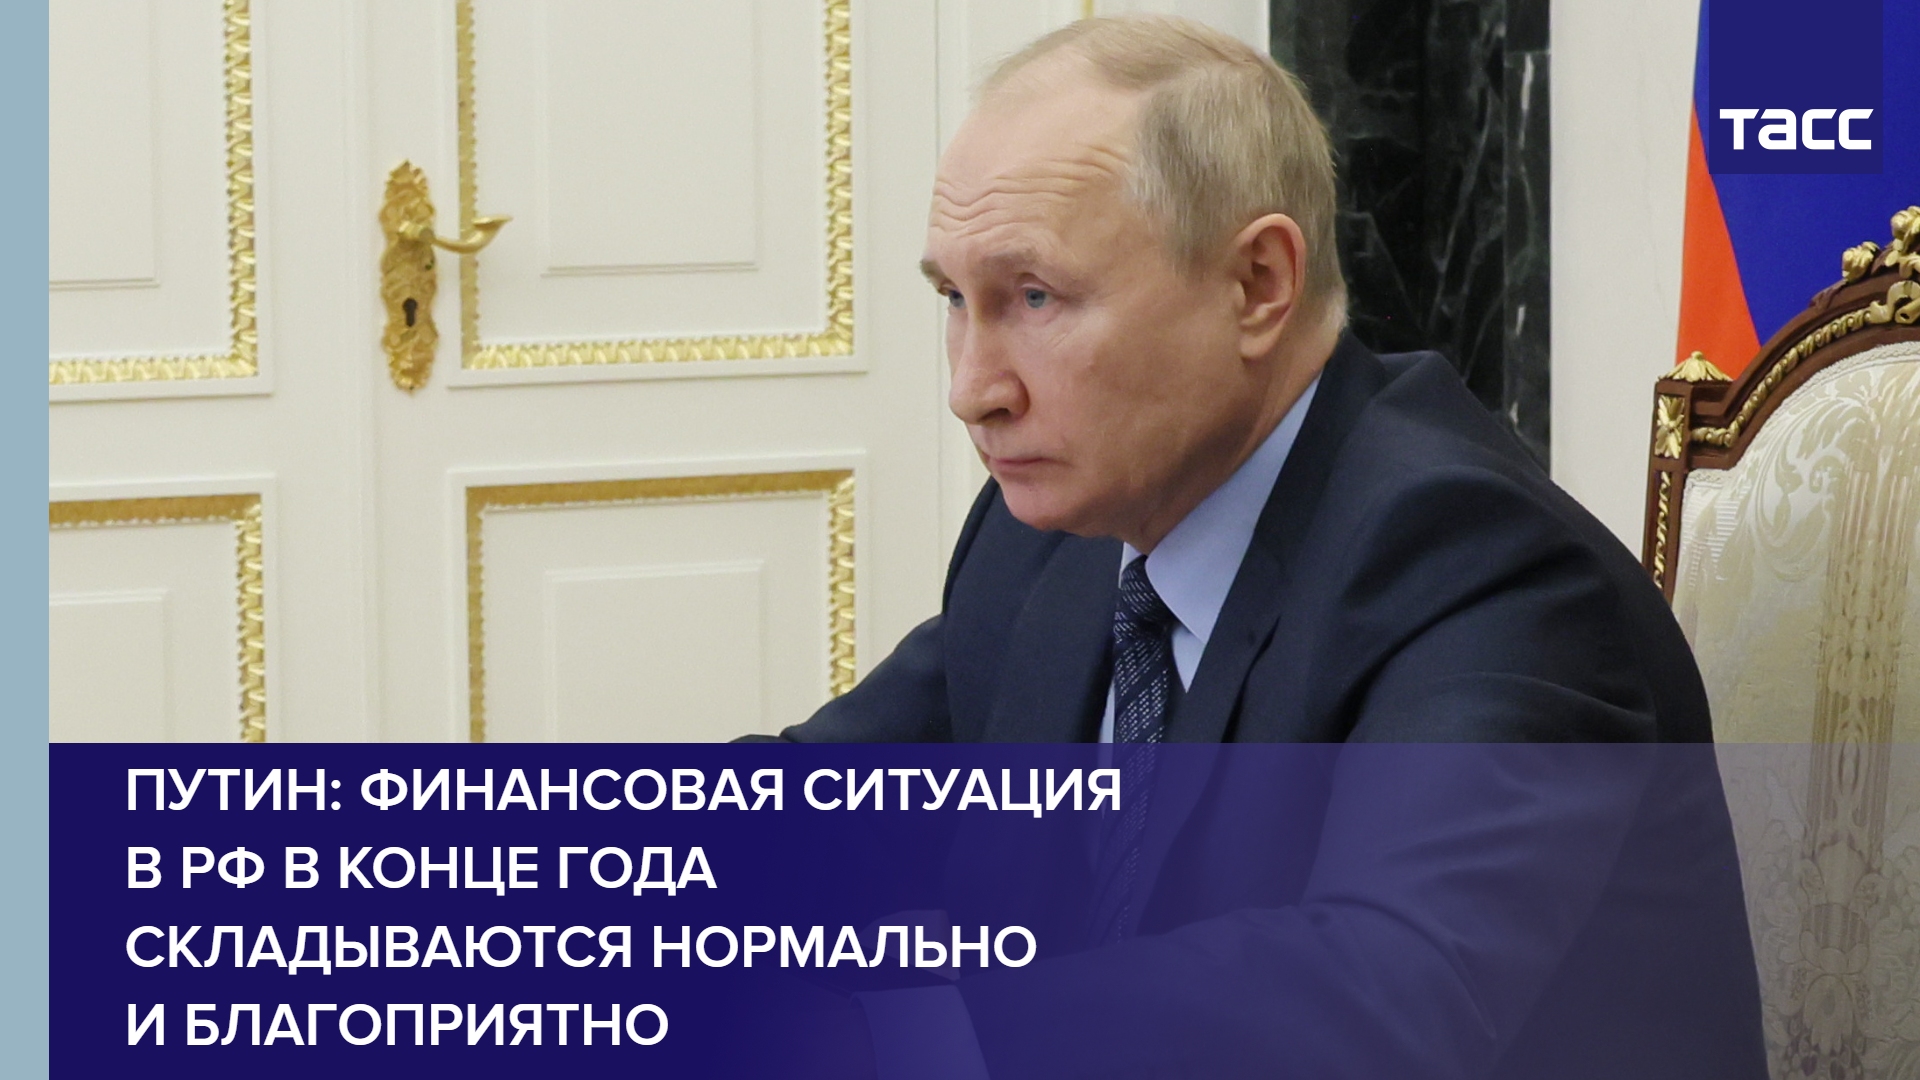 Путин: финансовая ситуация в РФ в конце года складываются нормально и благоприятно